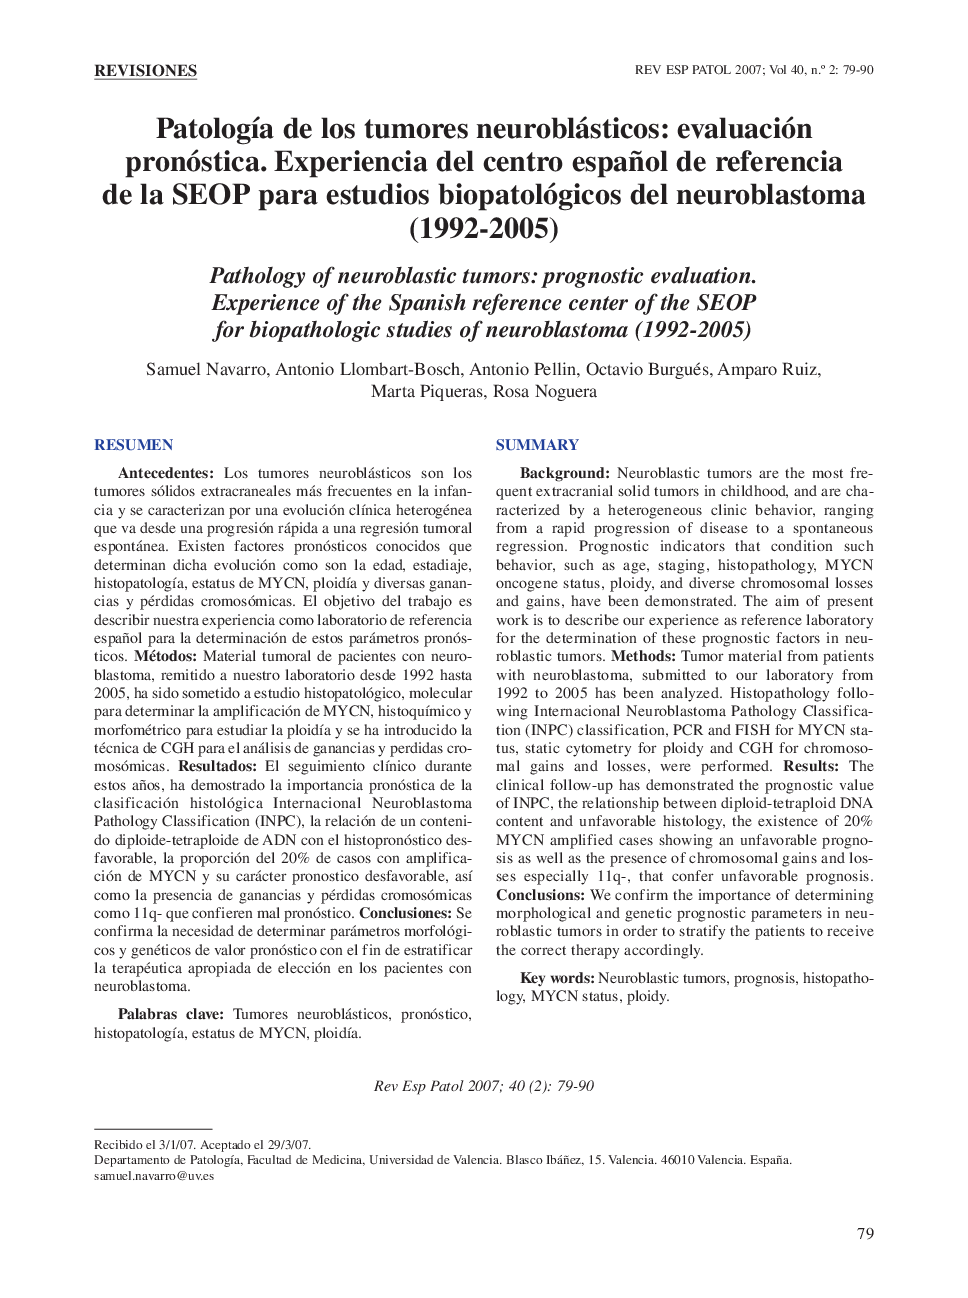 PatologÃ­a de los tumores neuroblásticos: evaluación pronóstica. Experiencia del centro español de referencia de la SEOP para estudios biopatológicos del neuroblastoma (1992-2005)